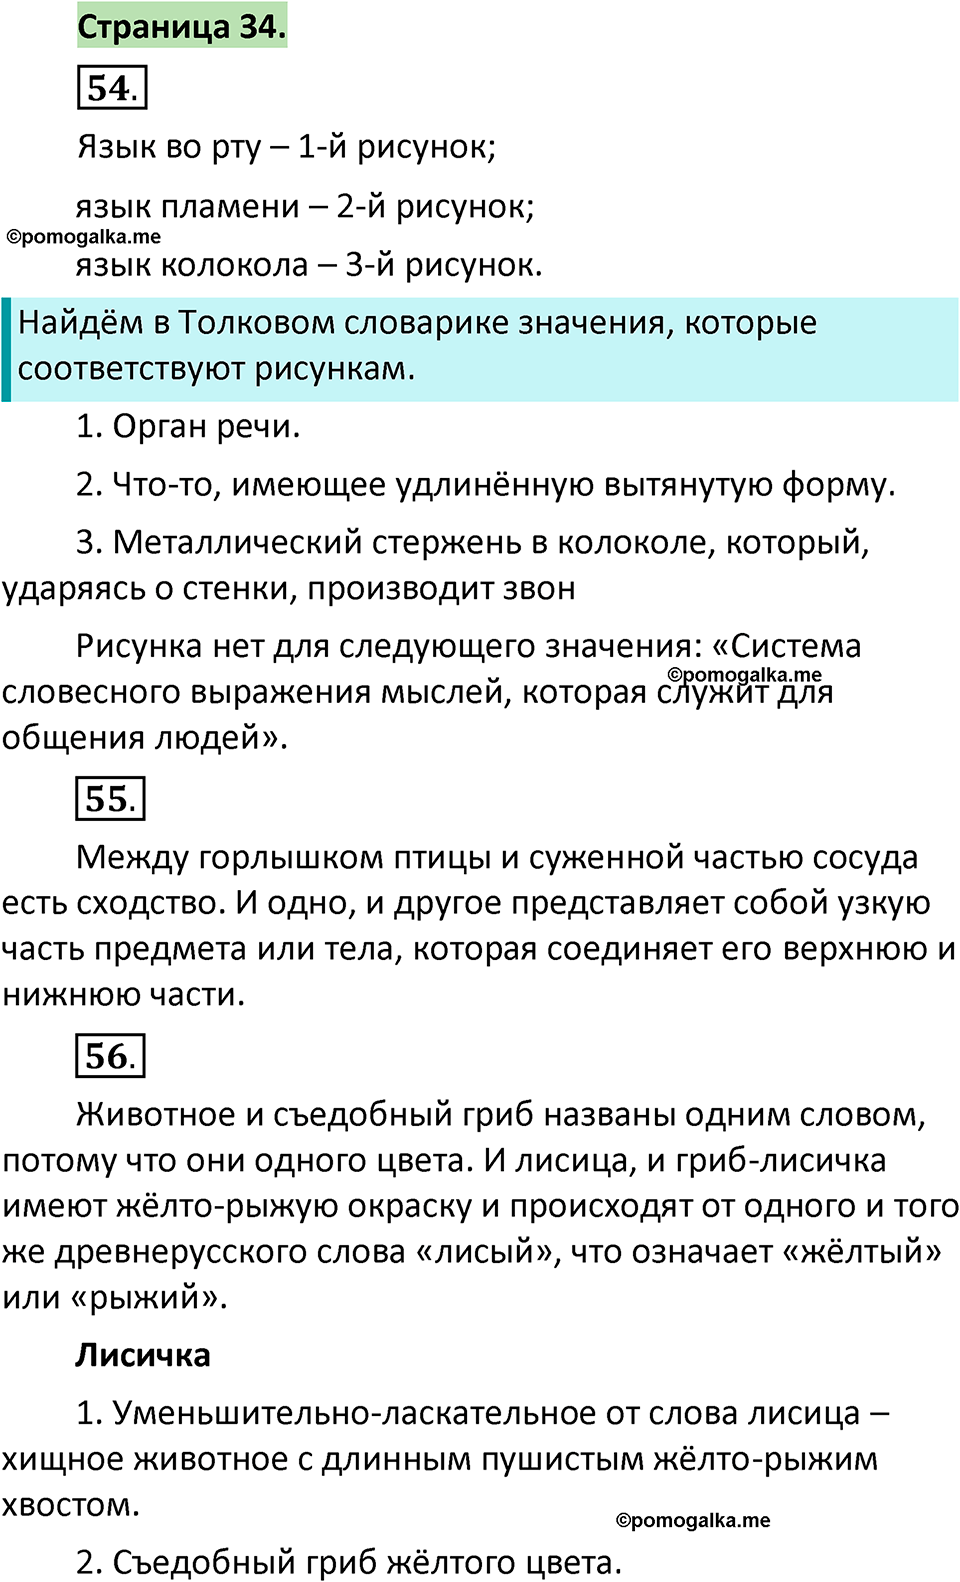 страница 34 русский язык 1 класс Климанова 2022